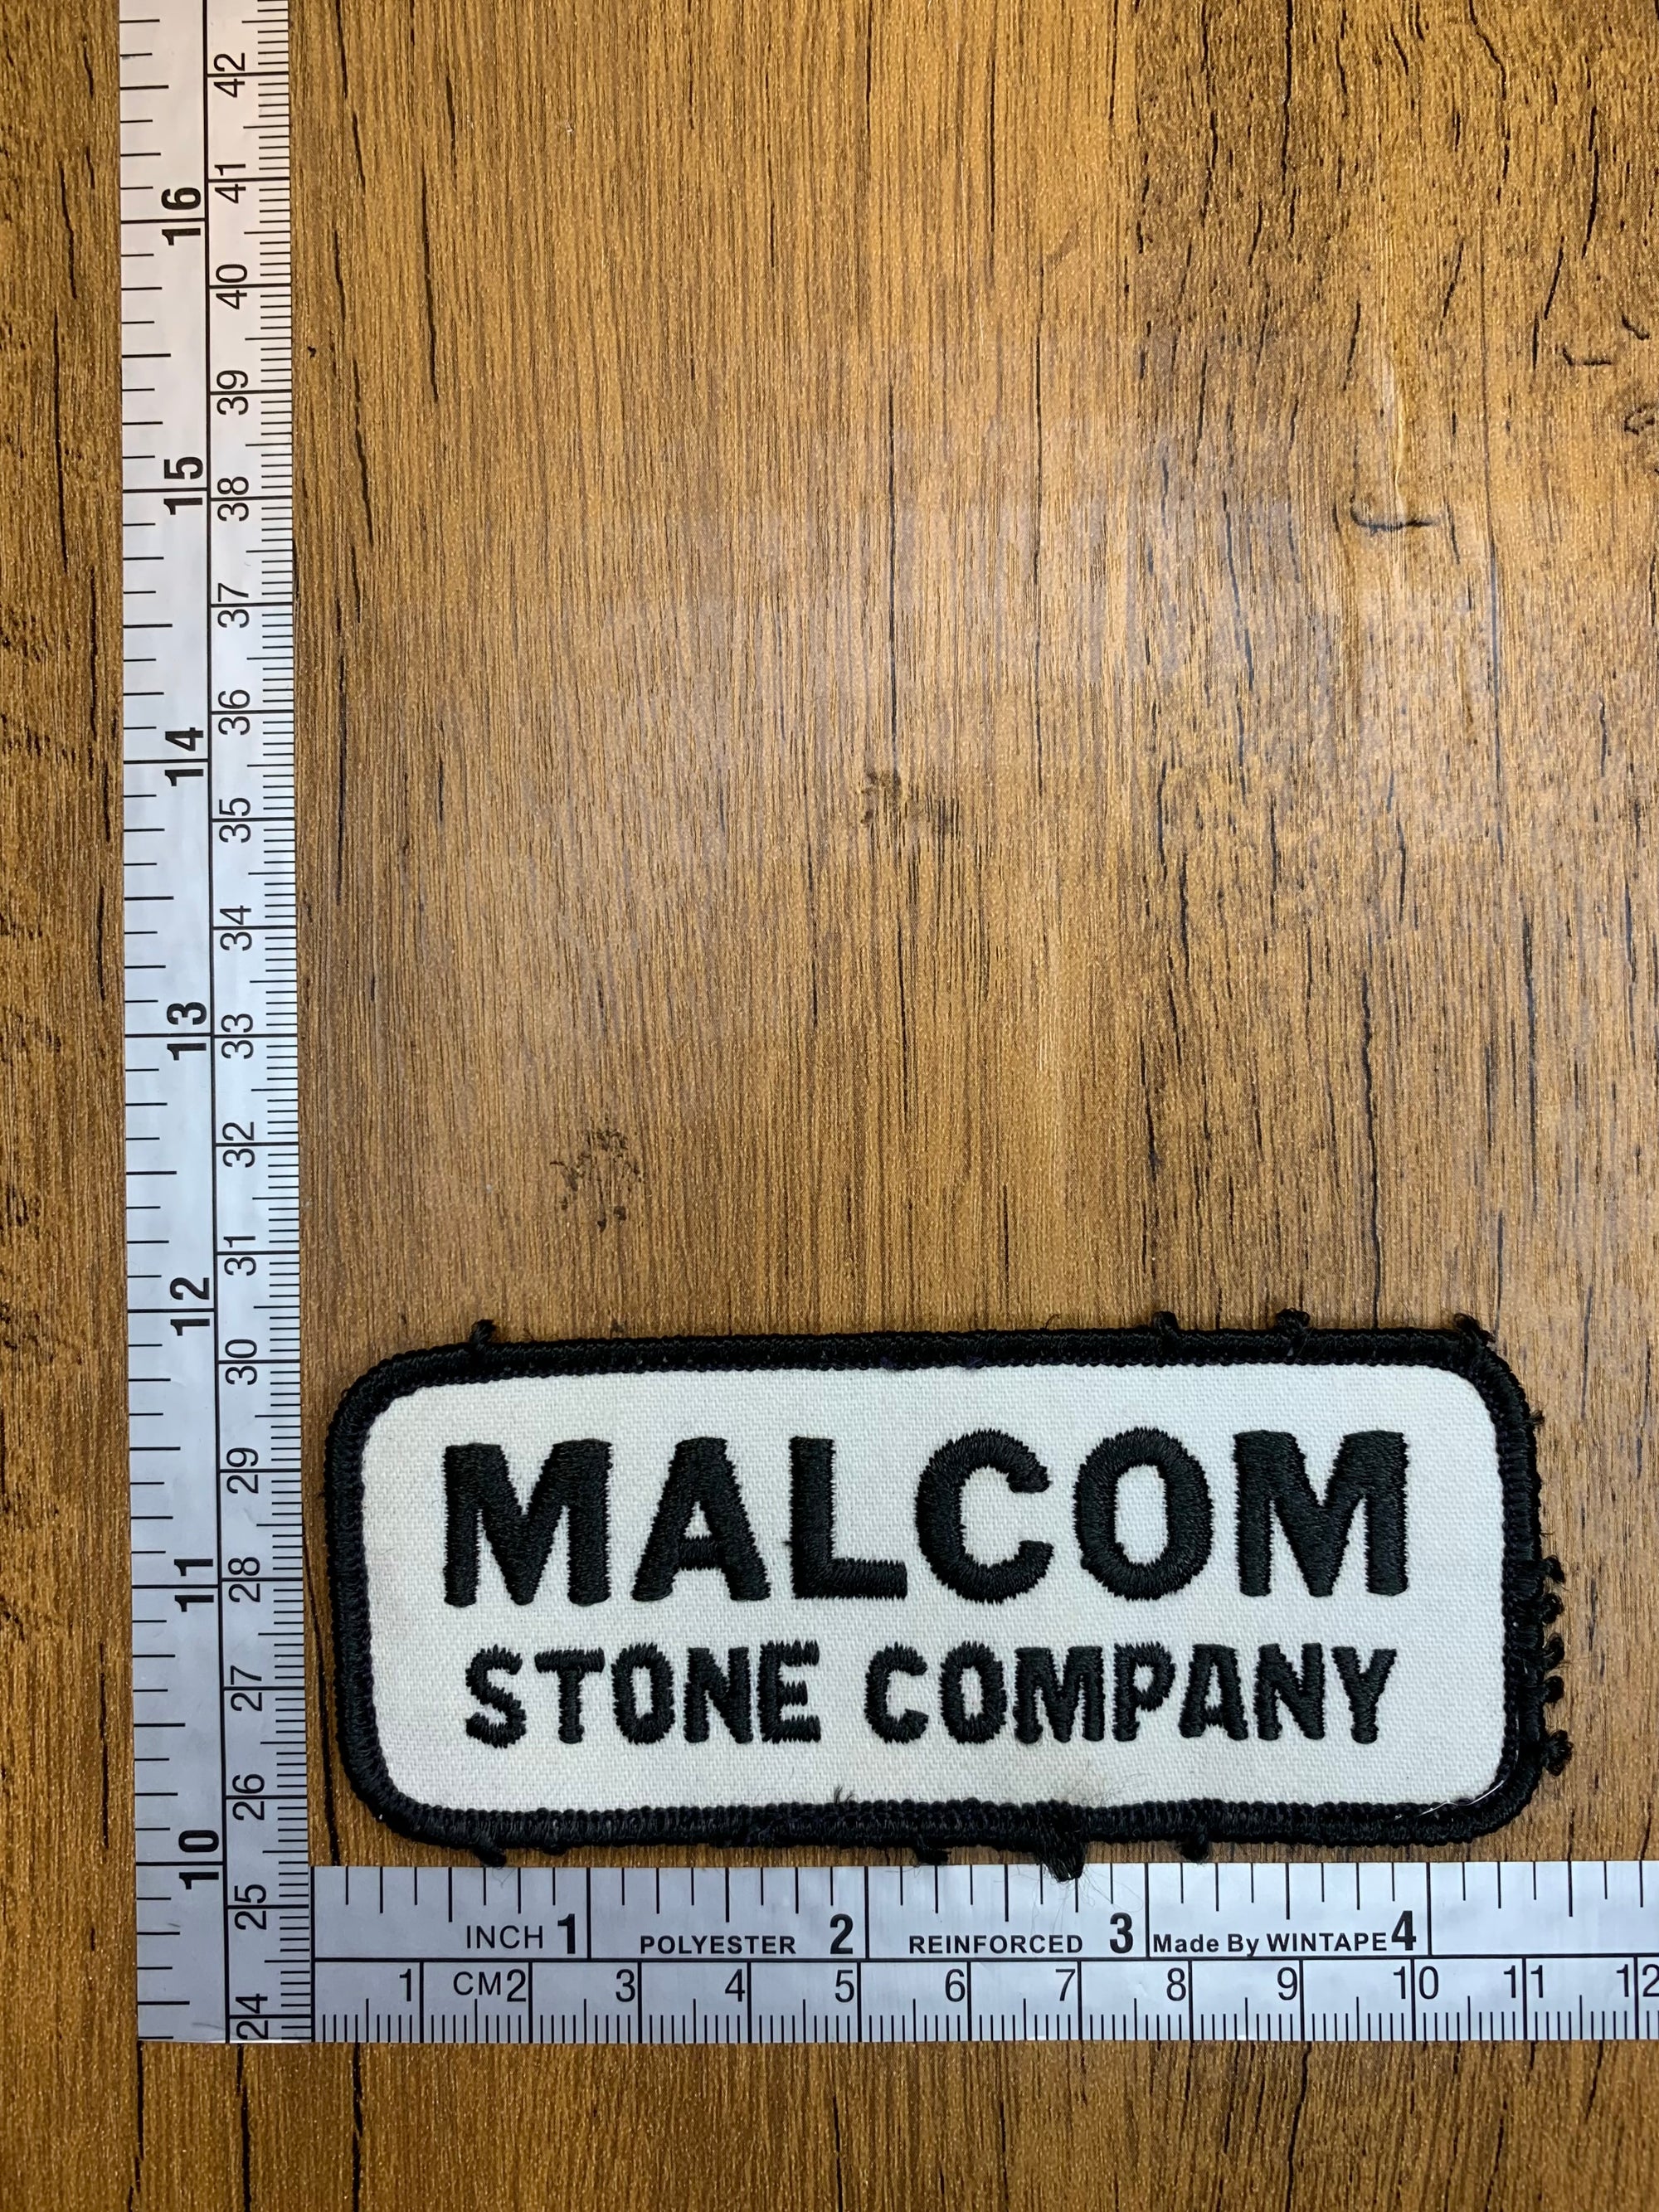 Malcom Stone Company